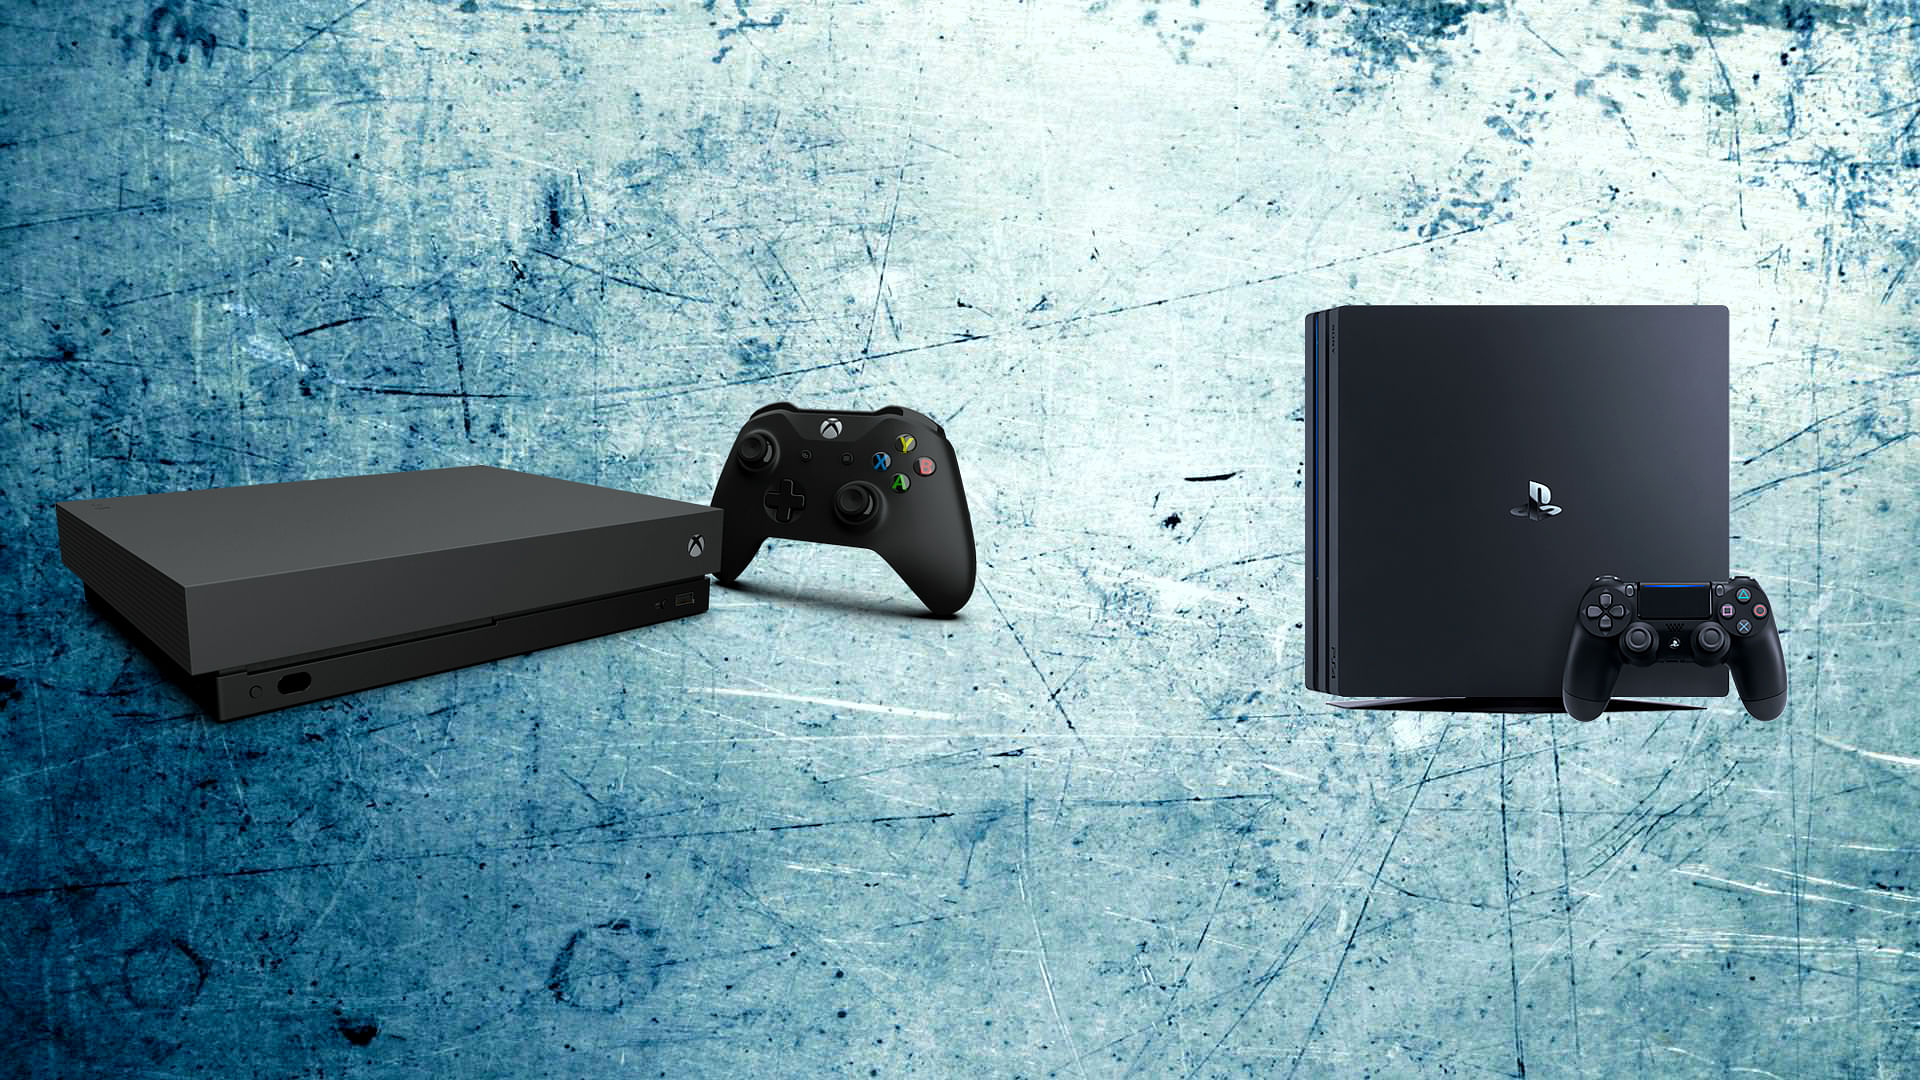 Xbox One X (left) Vs PS4 Pro